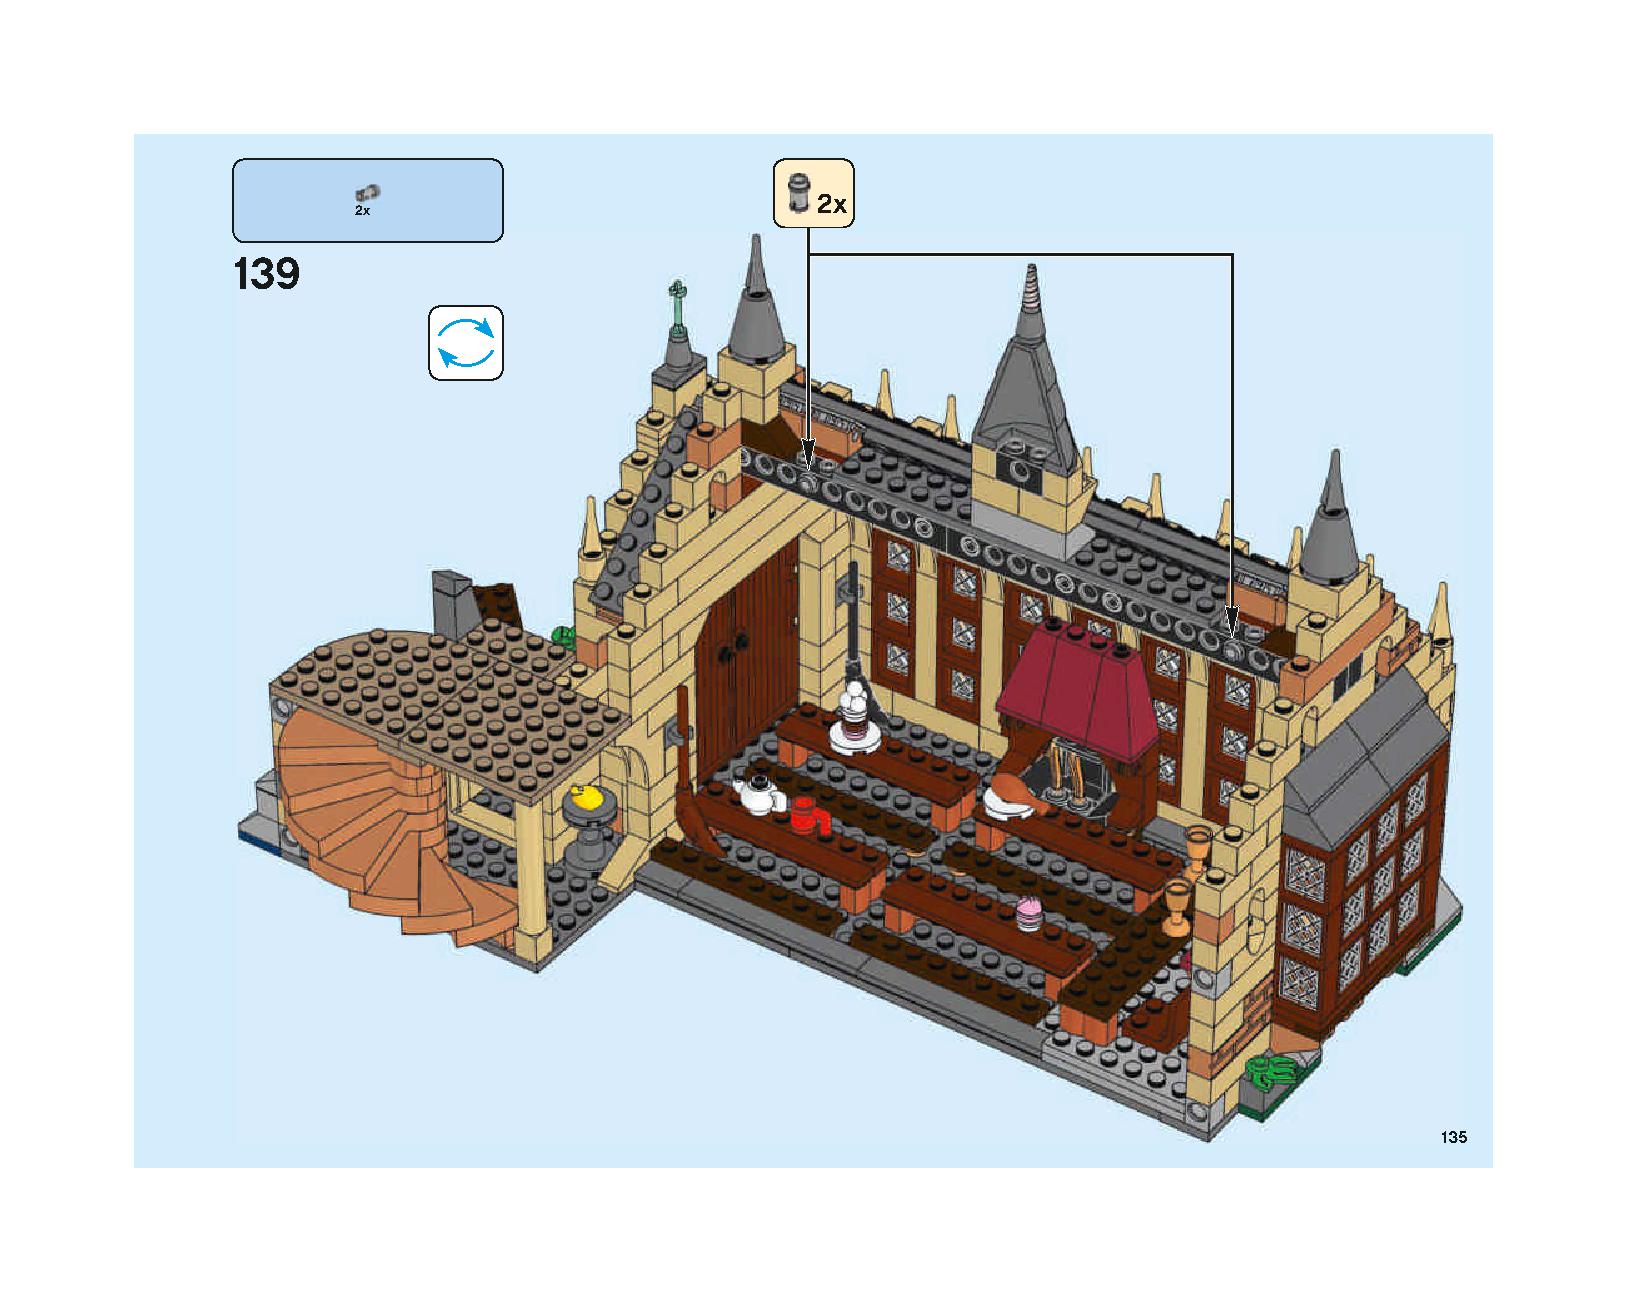 ホグワーツの大広間 75954 レゴの商品情報 レゴの説明書・組立方法 135 page